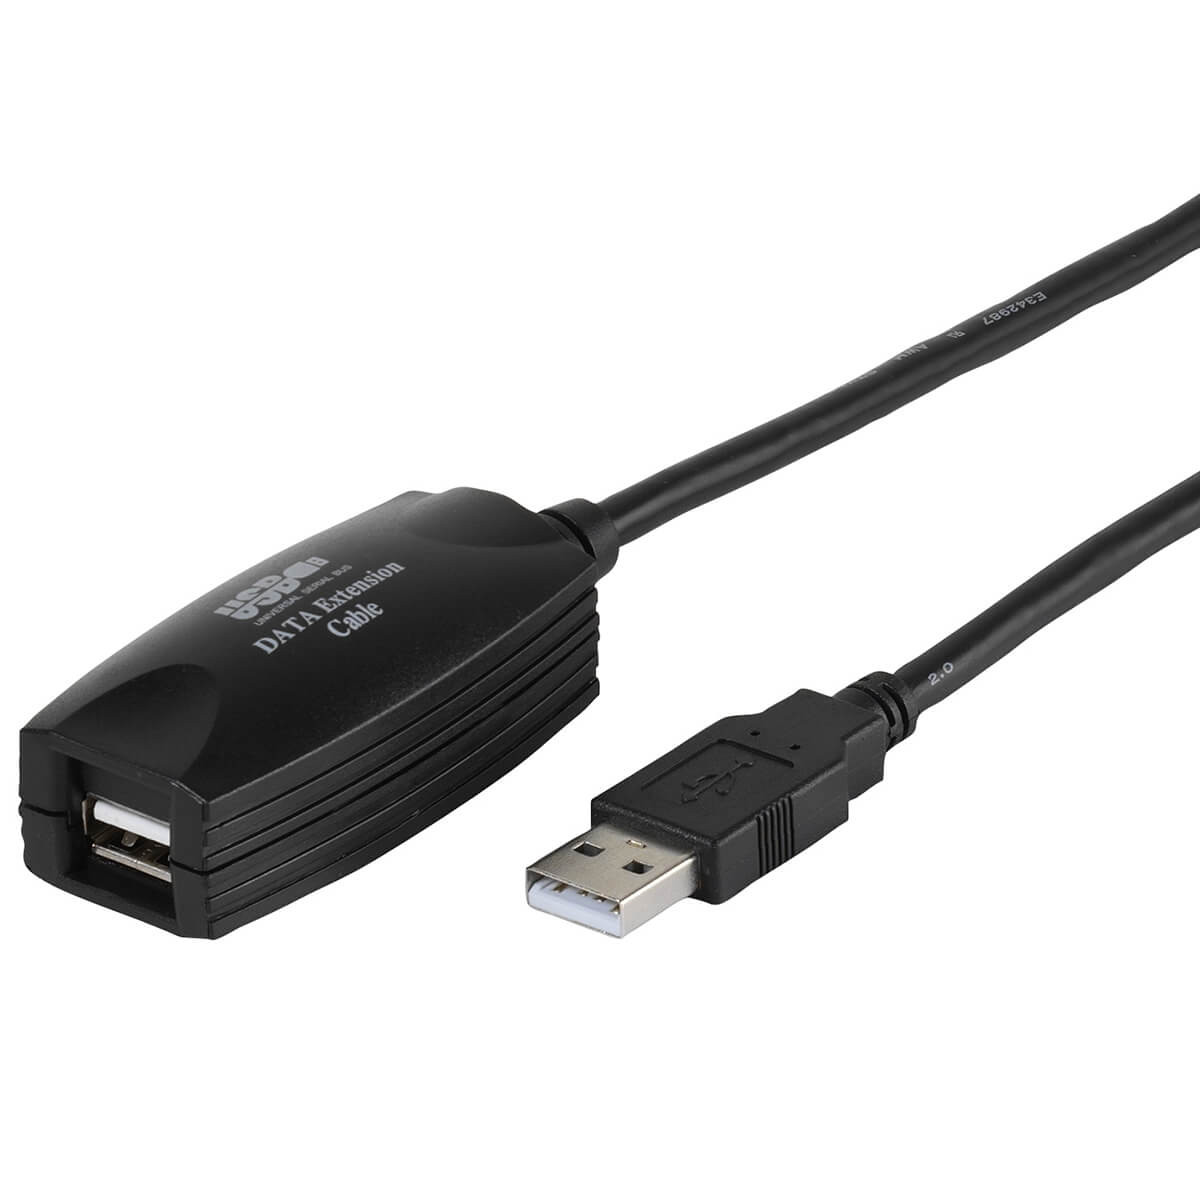 Активный usb купить. Vivanco удлинитель USB. Vivanco USB 2.0 золото. Кабель удлинитель USB 2.0 ( A - А ) 1,5 М синий. Виванко шнур.